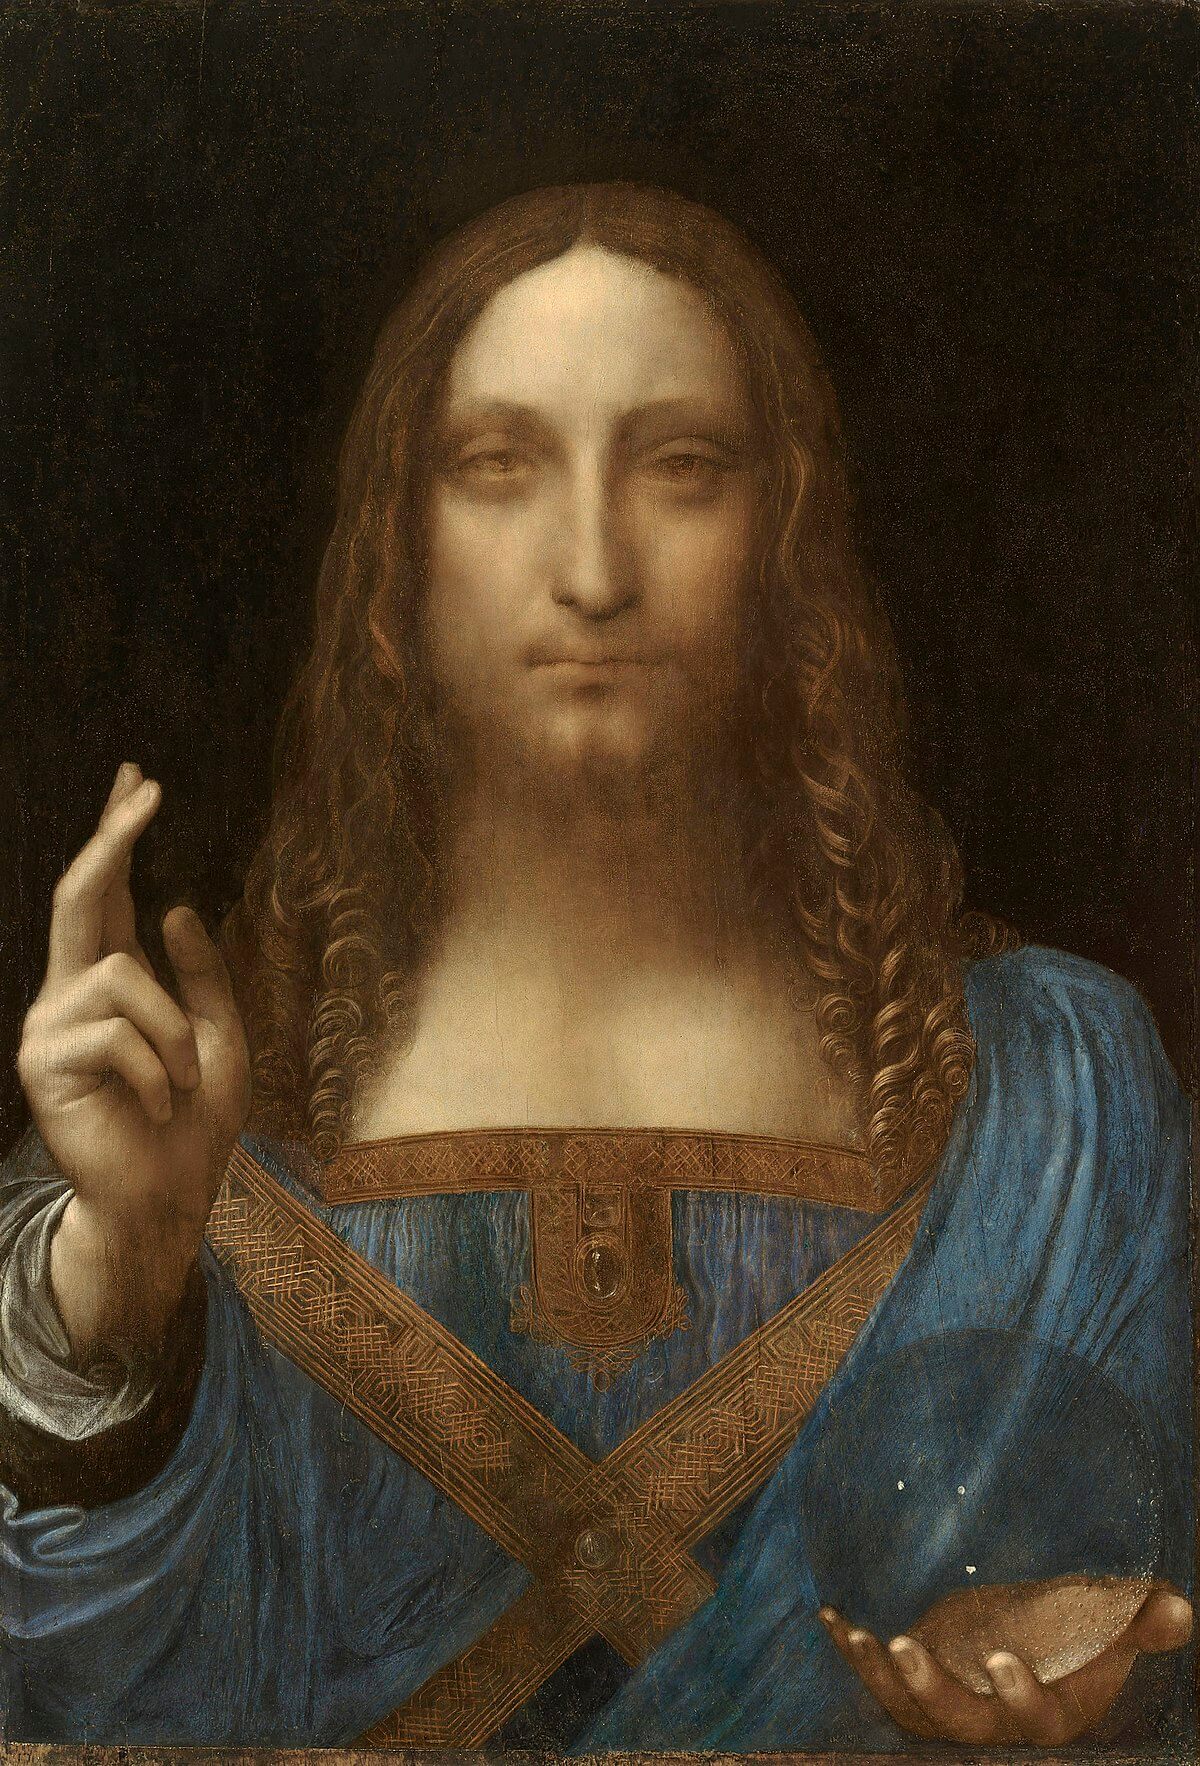 1200px-Leonardo_da_Vinci_Salvator_Mundi_c.1500_oil_on_walnut_45.4_×_65.6_cm